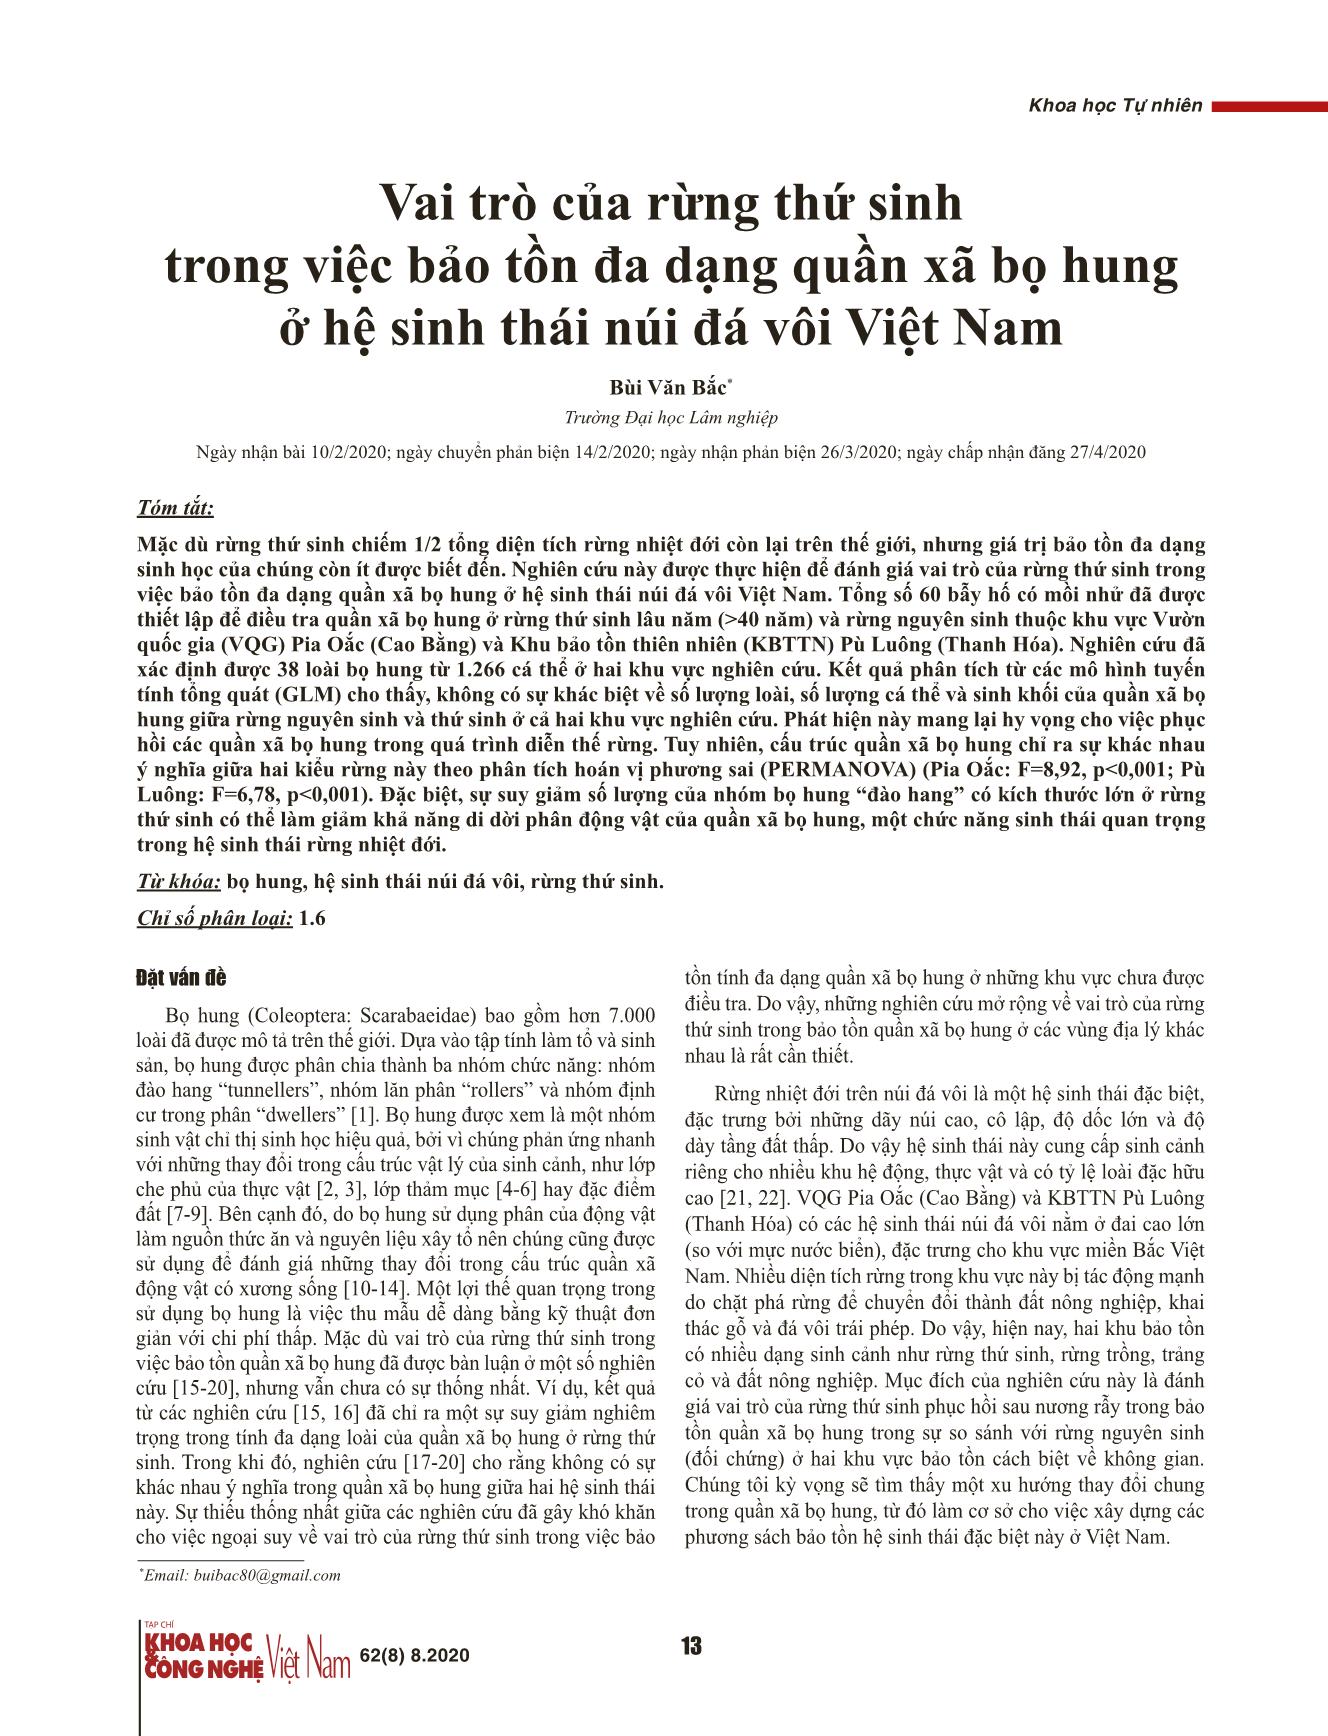 Vai trò của rừng thứ sinh trong việc bảo tồn đa dạng quần xã bọ hung ở hệ sinh thái núi đá vôi Việt Nam trang 1